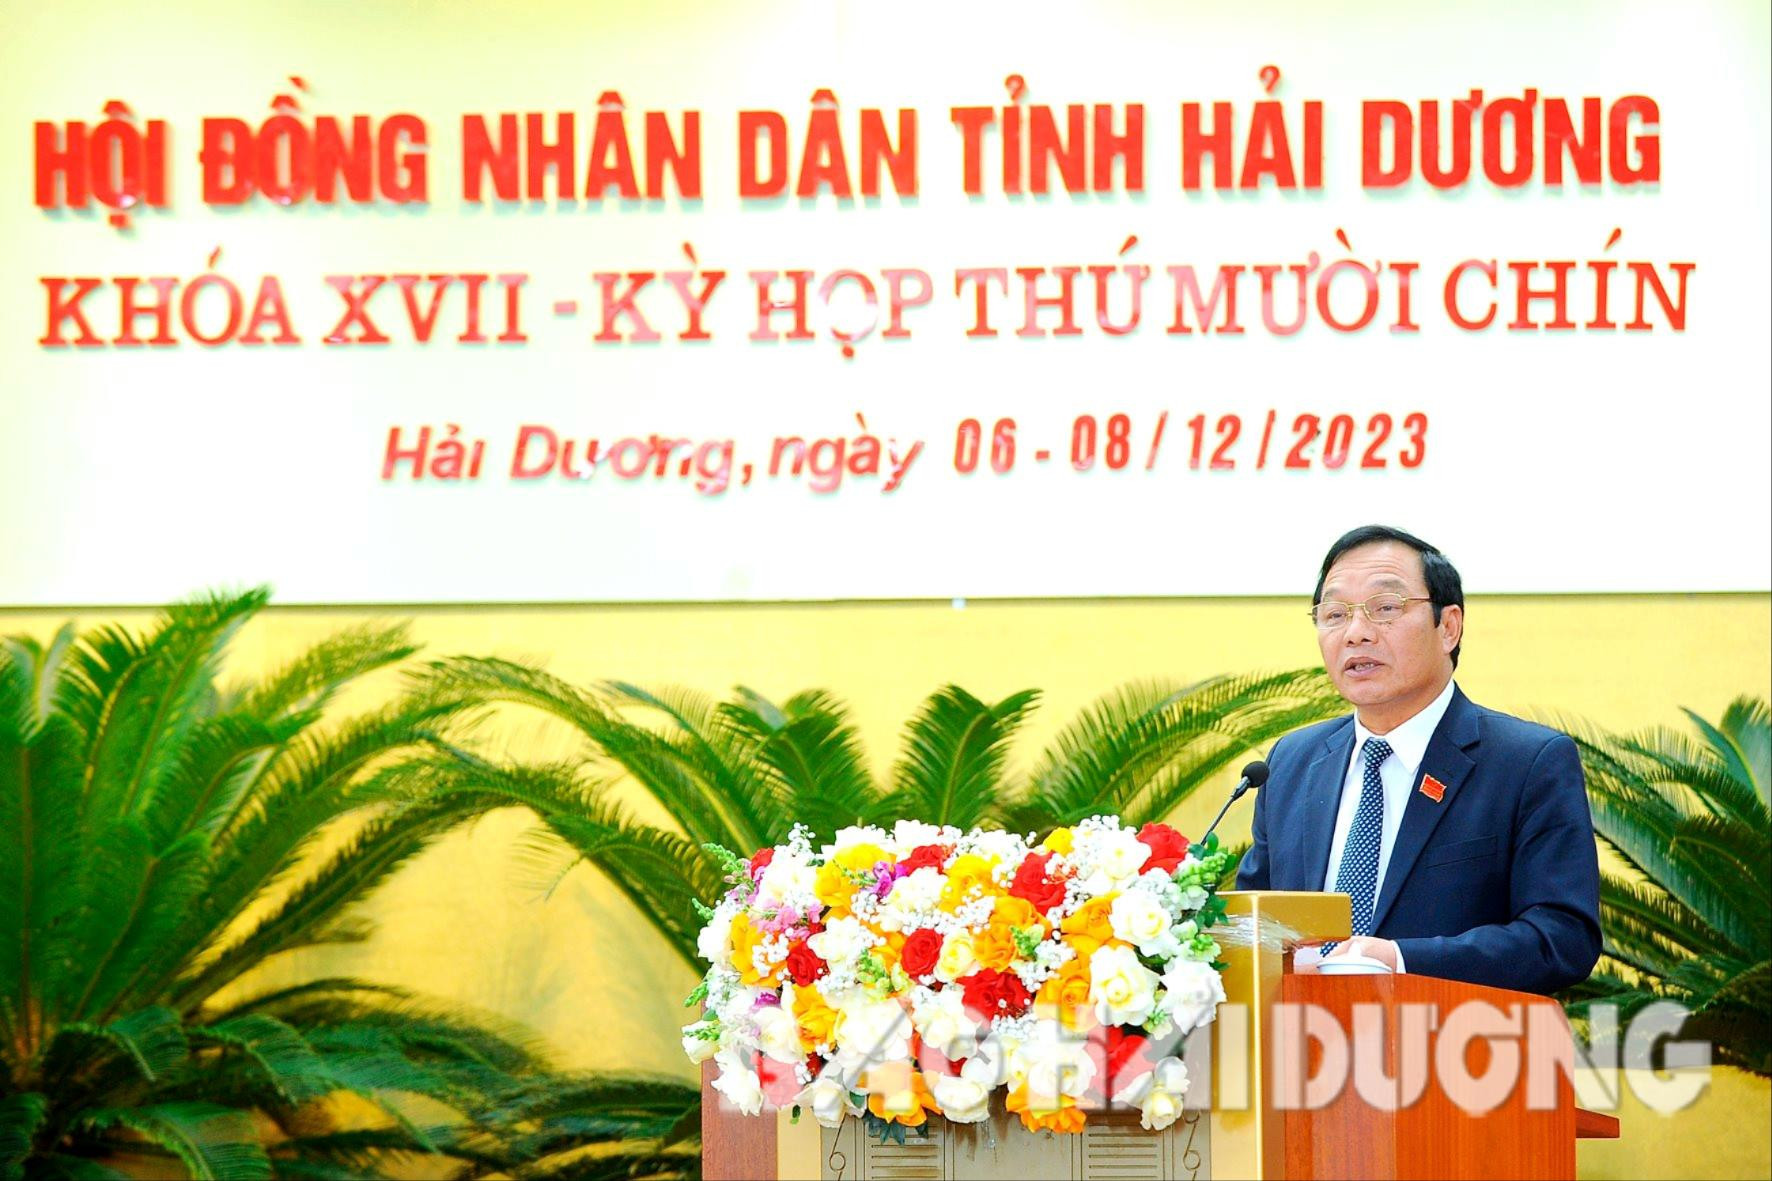 HĐND tỉnh Hải Dương thông qua 41 nghị quyết, trong đó có nhiều chính sách về an sinh xã hội- Ảnh 1.